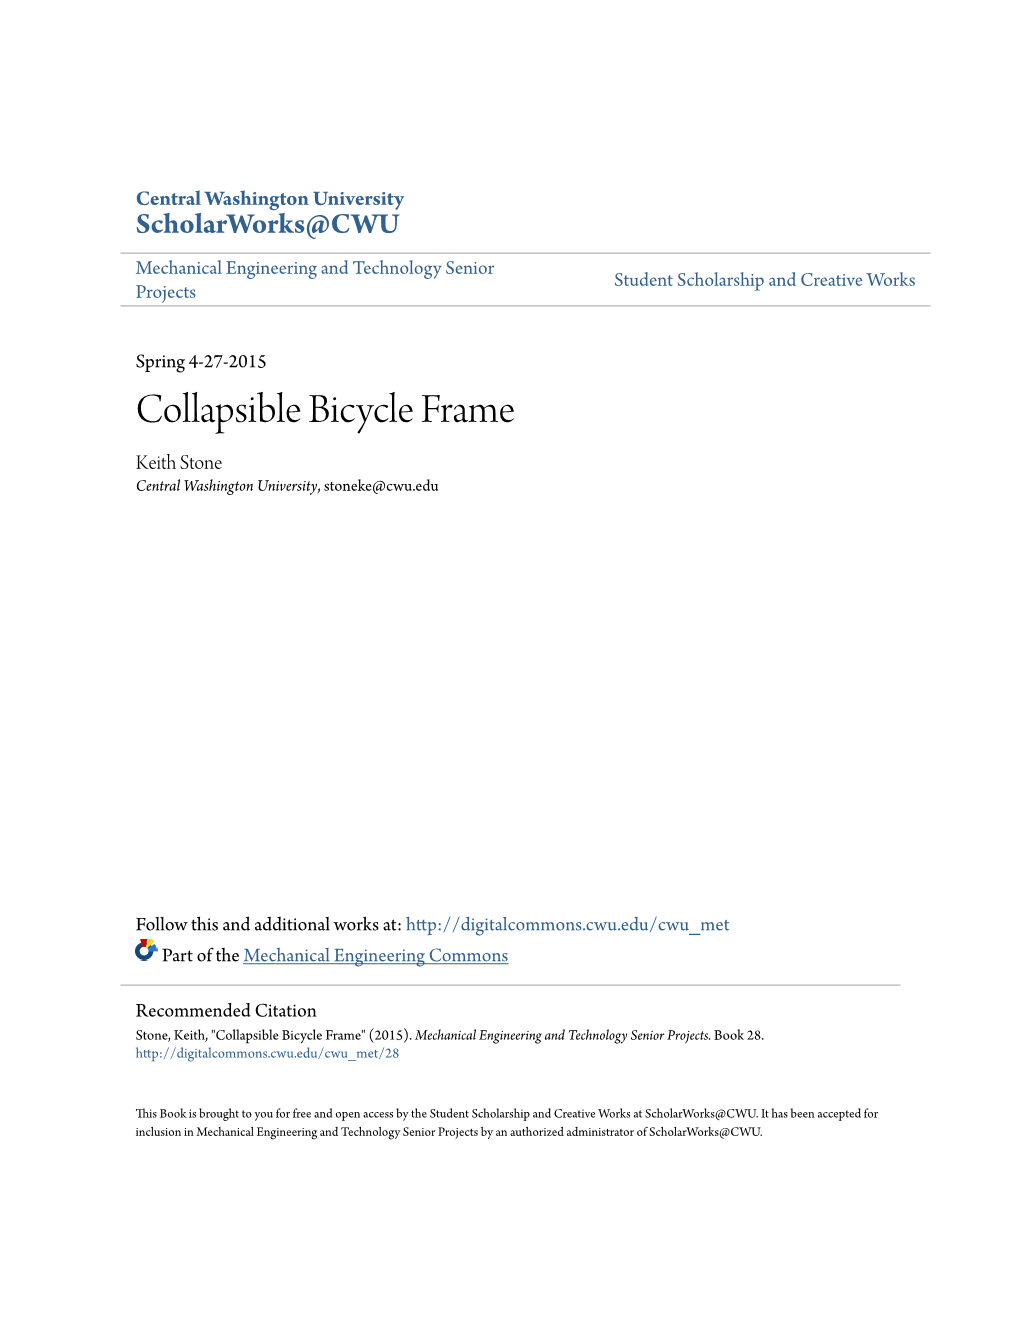 Collapsible Bicycle Frame Keith Stone Central Washington University, Stoneke@Cwu.Edu